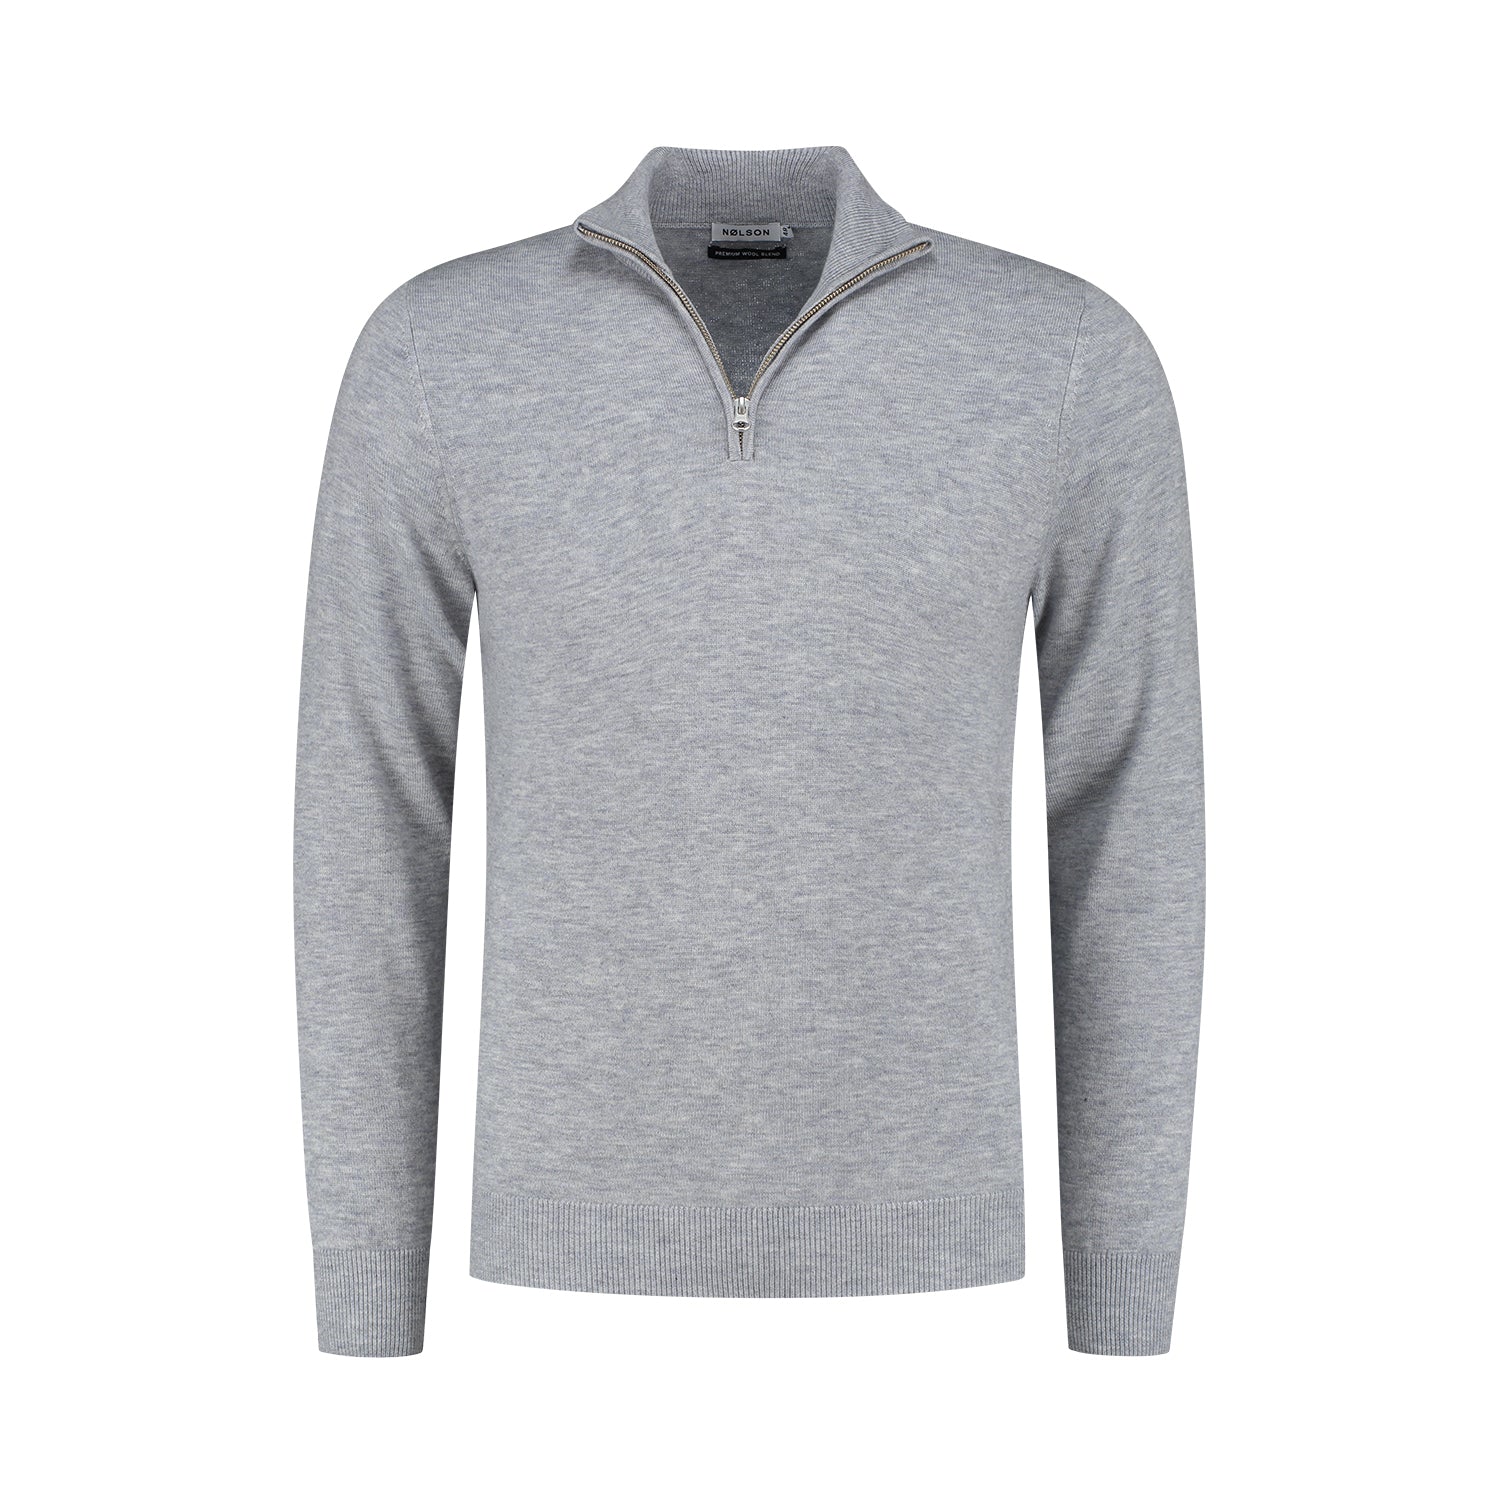 Quarter-zip Grey Sweater